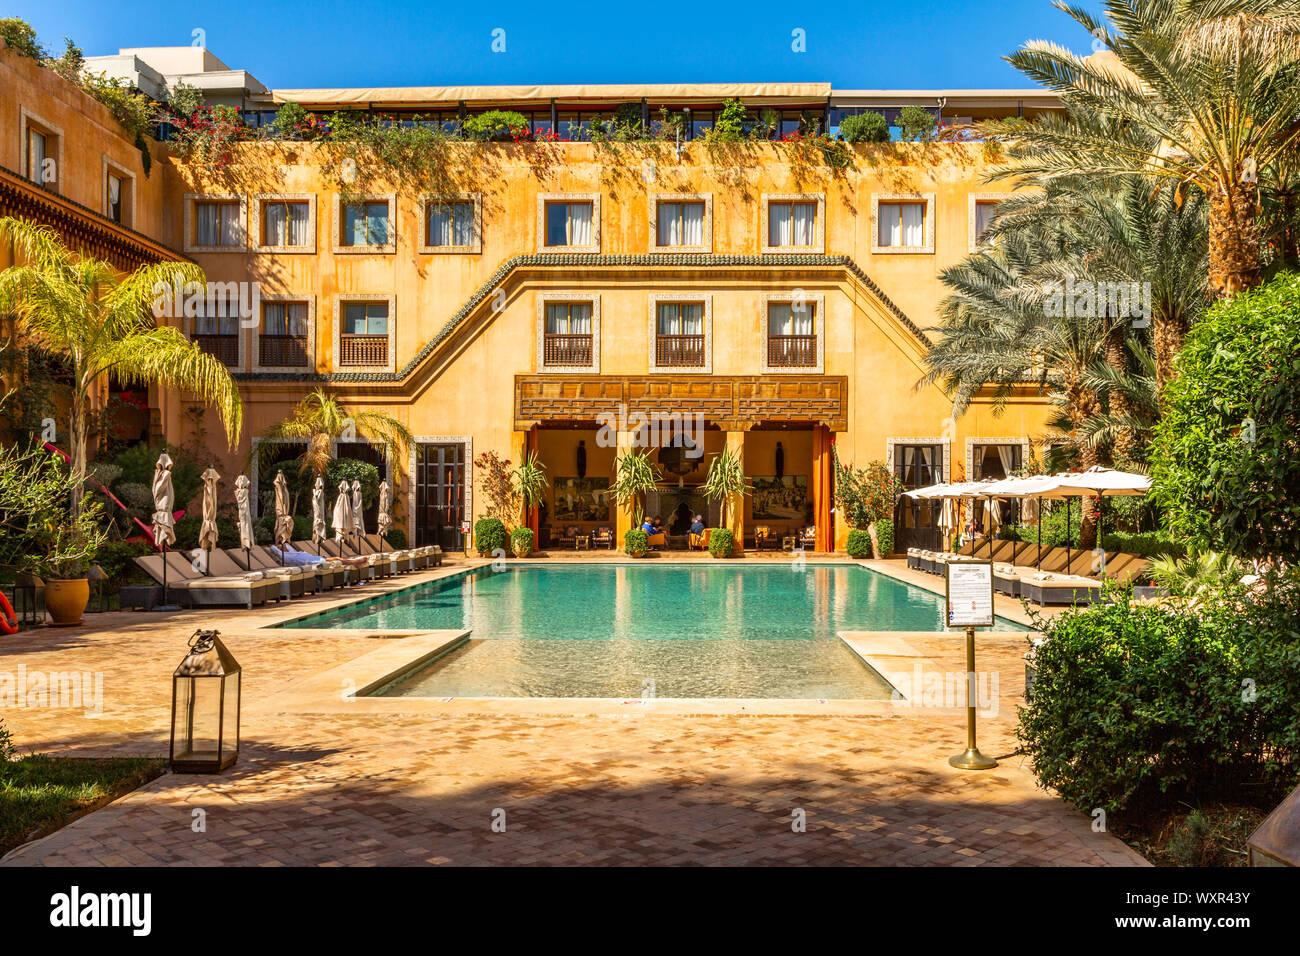 Les Jardins De La Koutoubia 5 star hotel di lusso. Offre un Carita Spa, vasca idromassaggio e piscina esterna circondata da palme, Marrakech Marocco. Foto Stock